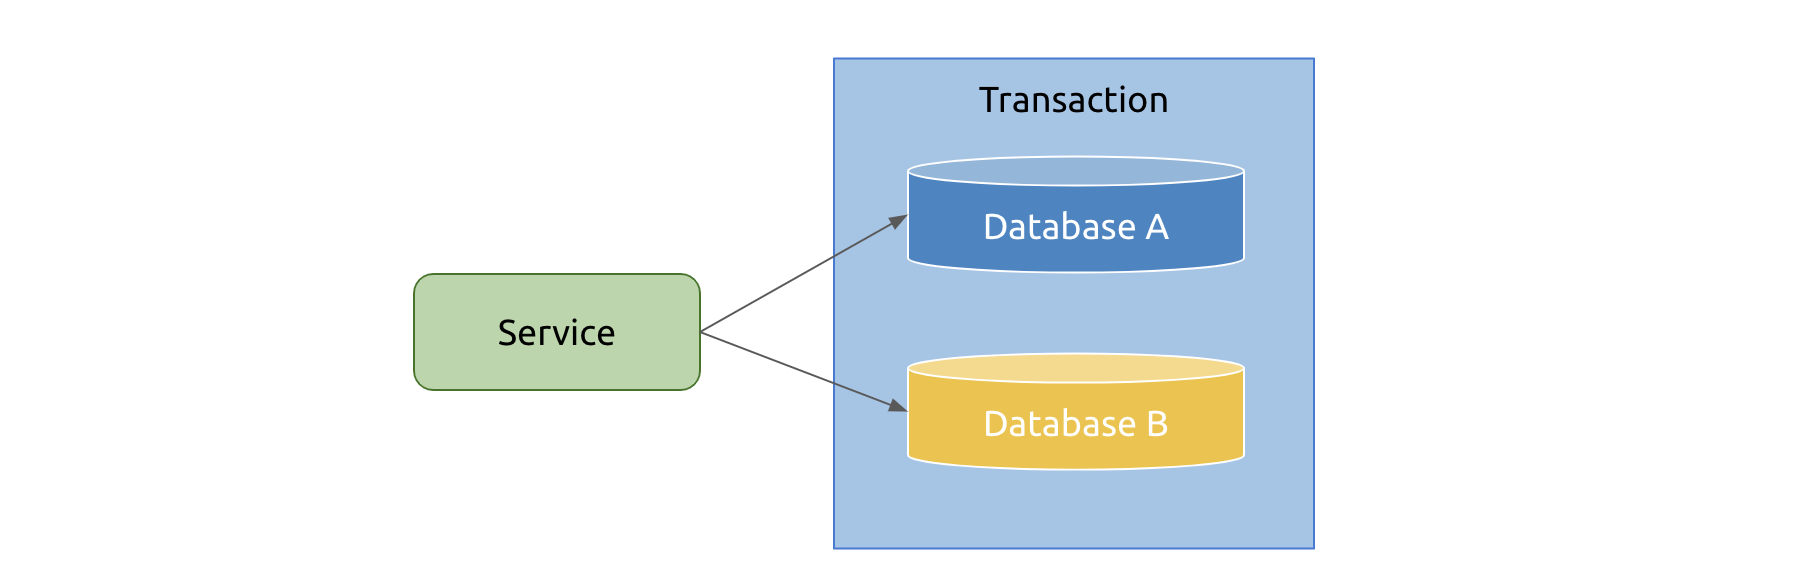 Cross-database transactions